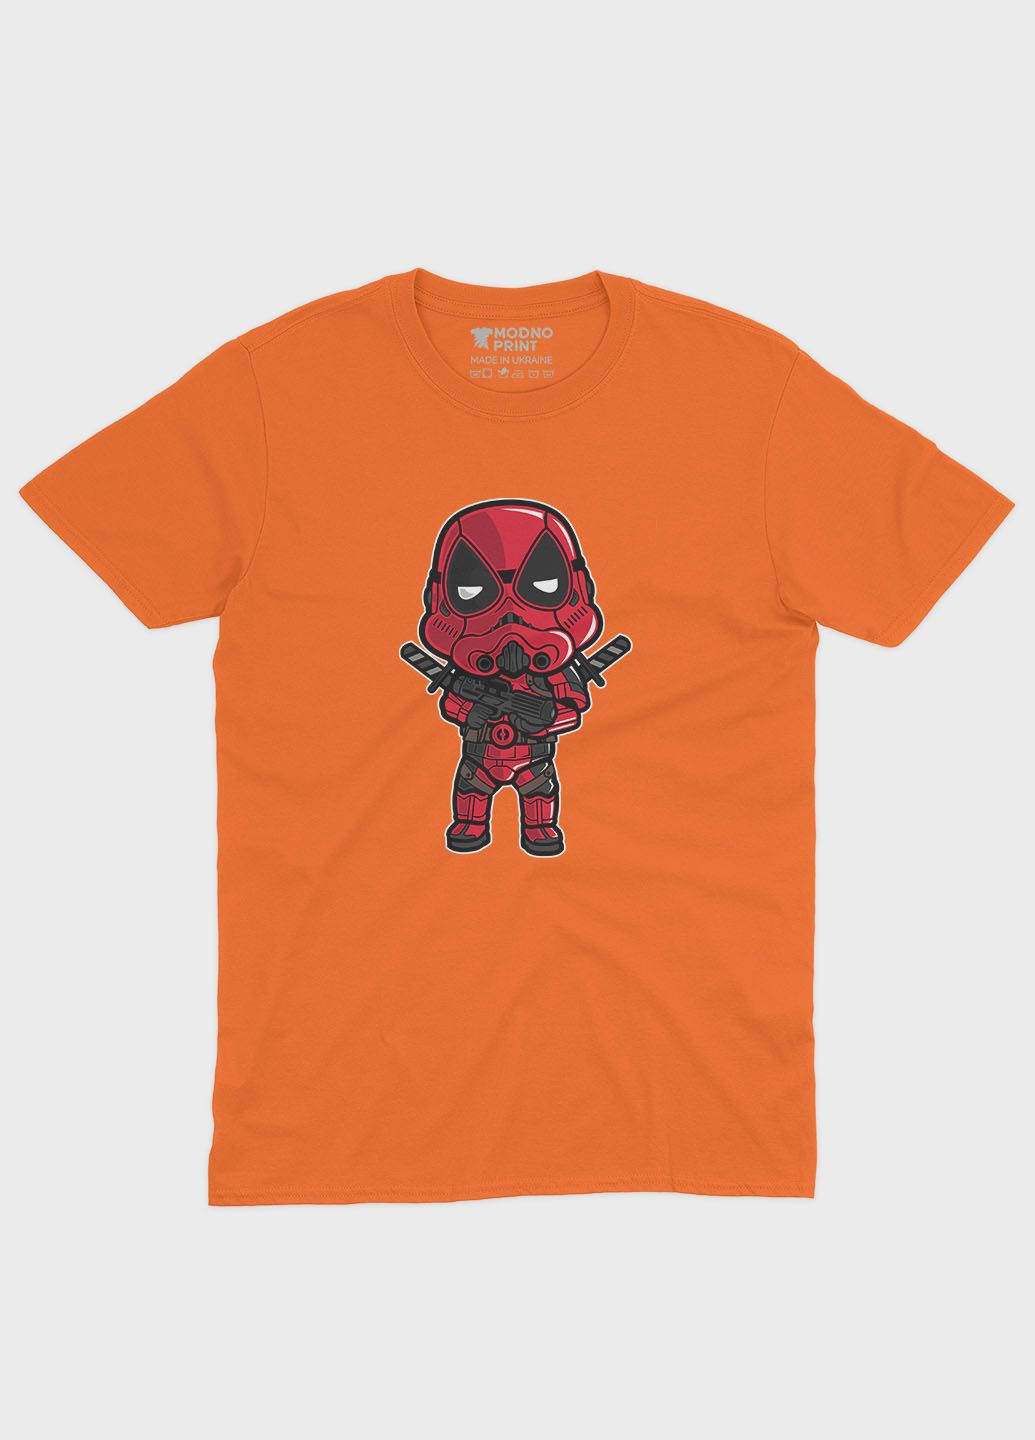 Оранжевая демисезонная футболка для мальчика с принтом антигероя - дедпул (ts001-1-ora-006-015-017-b) Modno